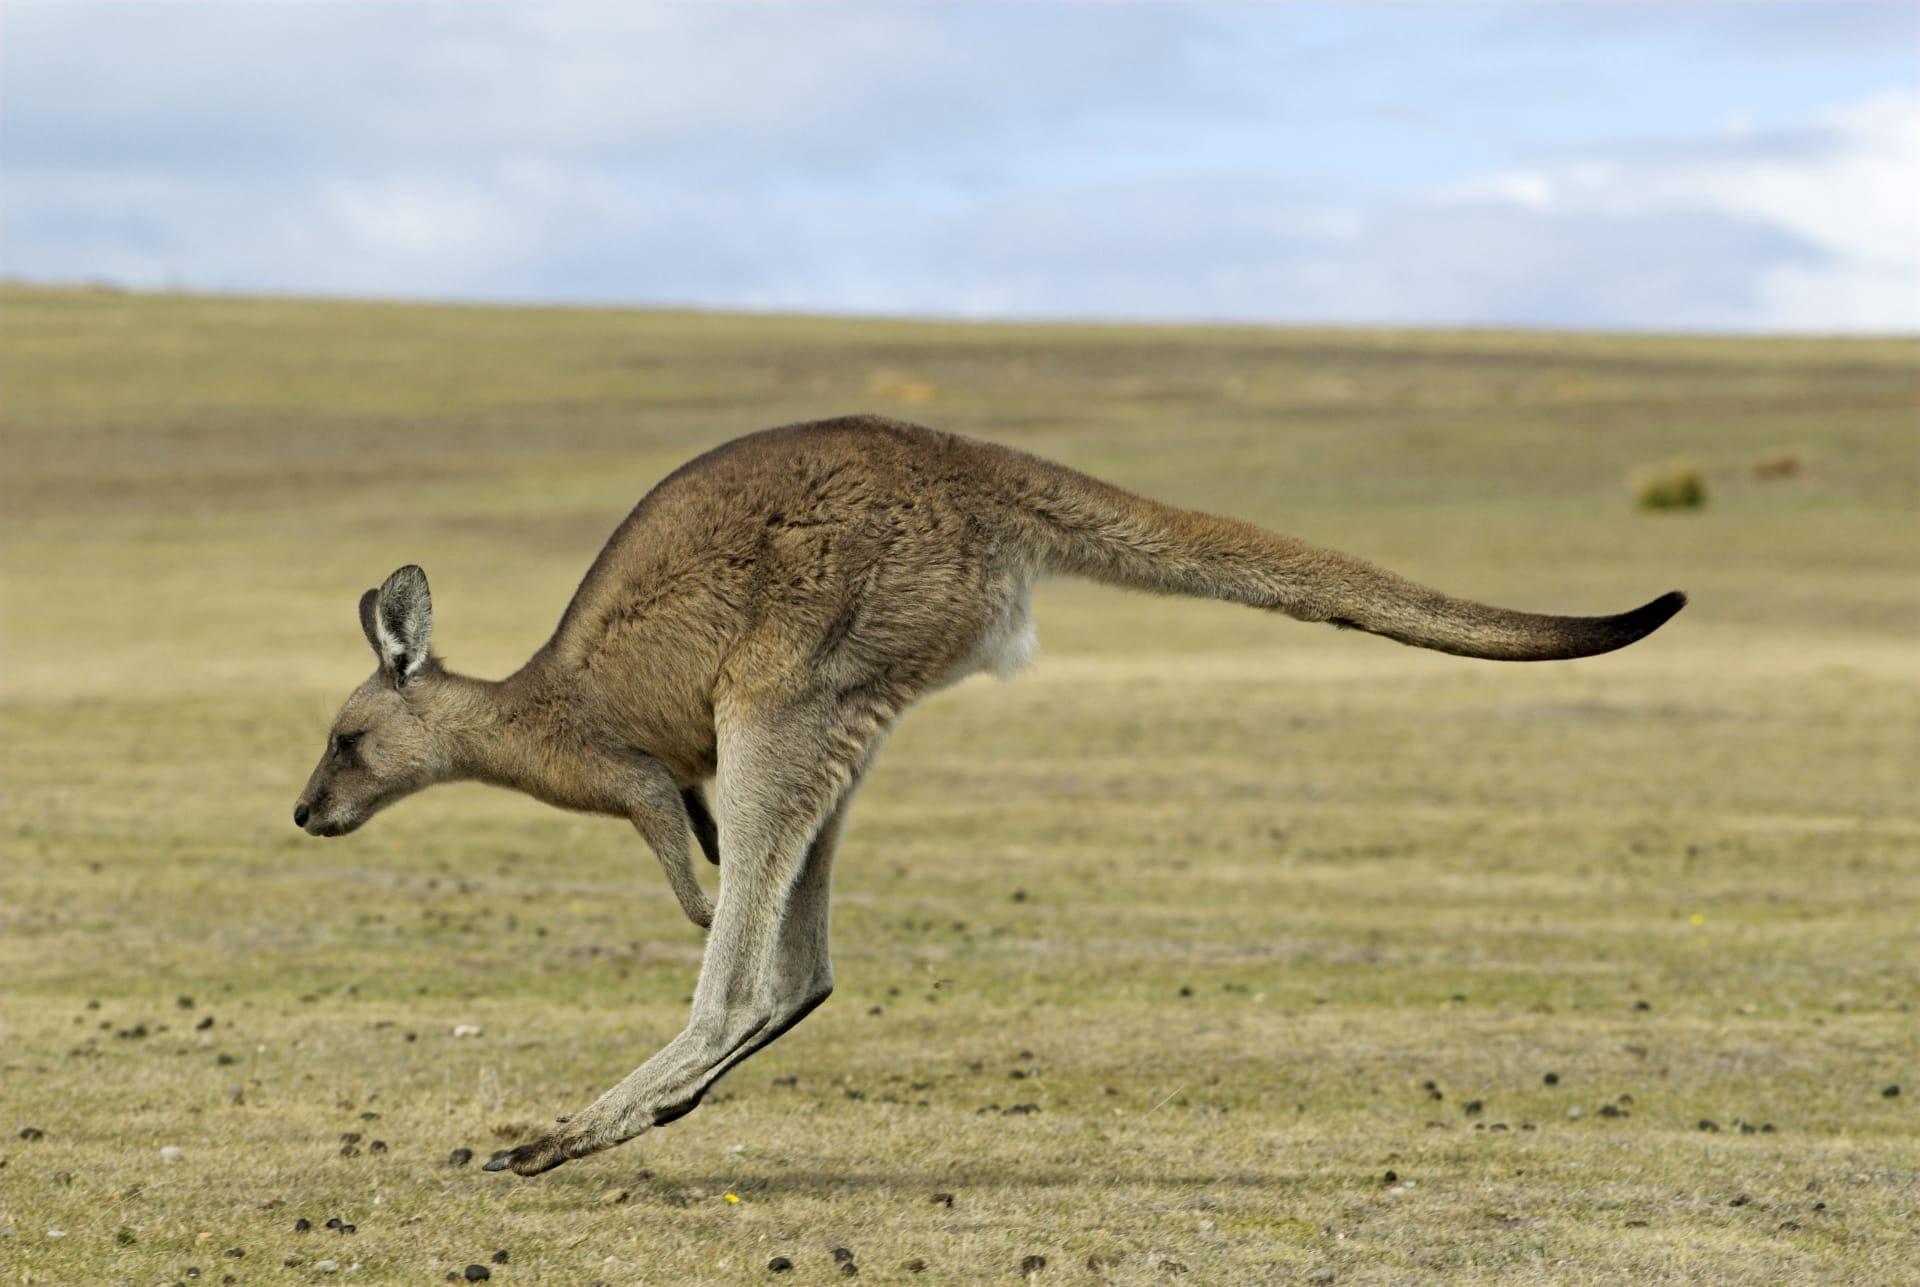 Kangaroo pictures